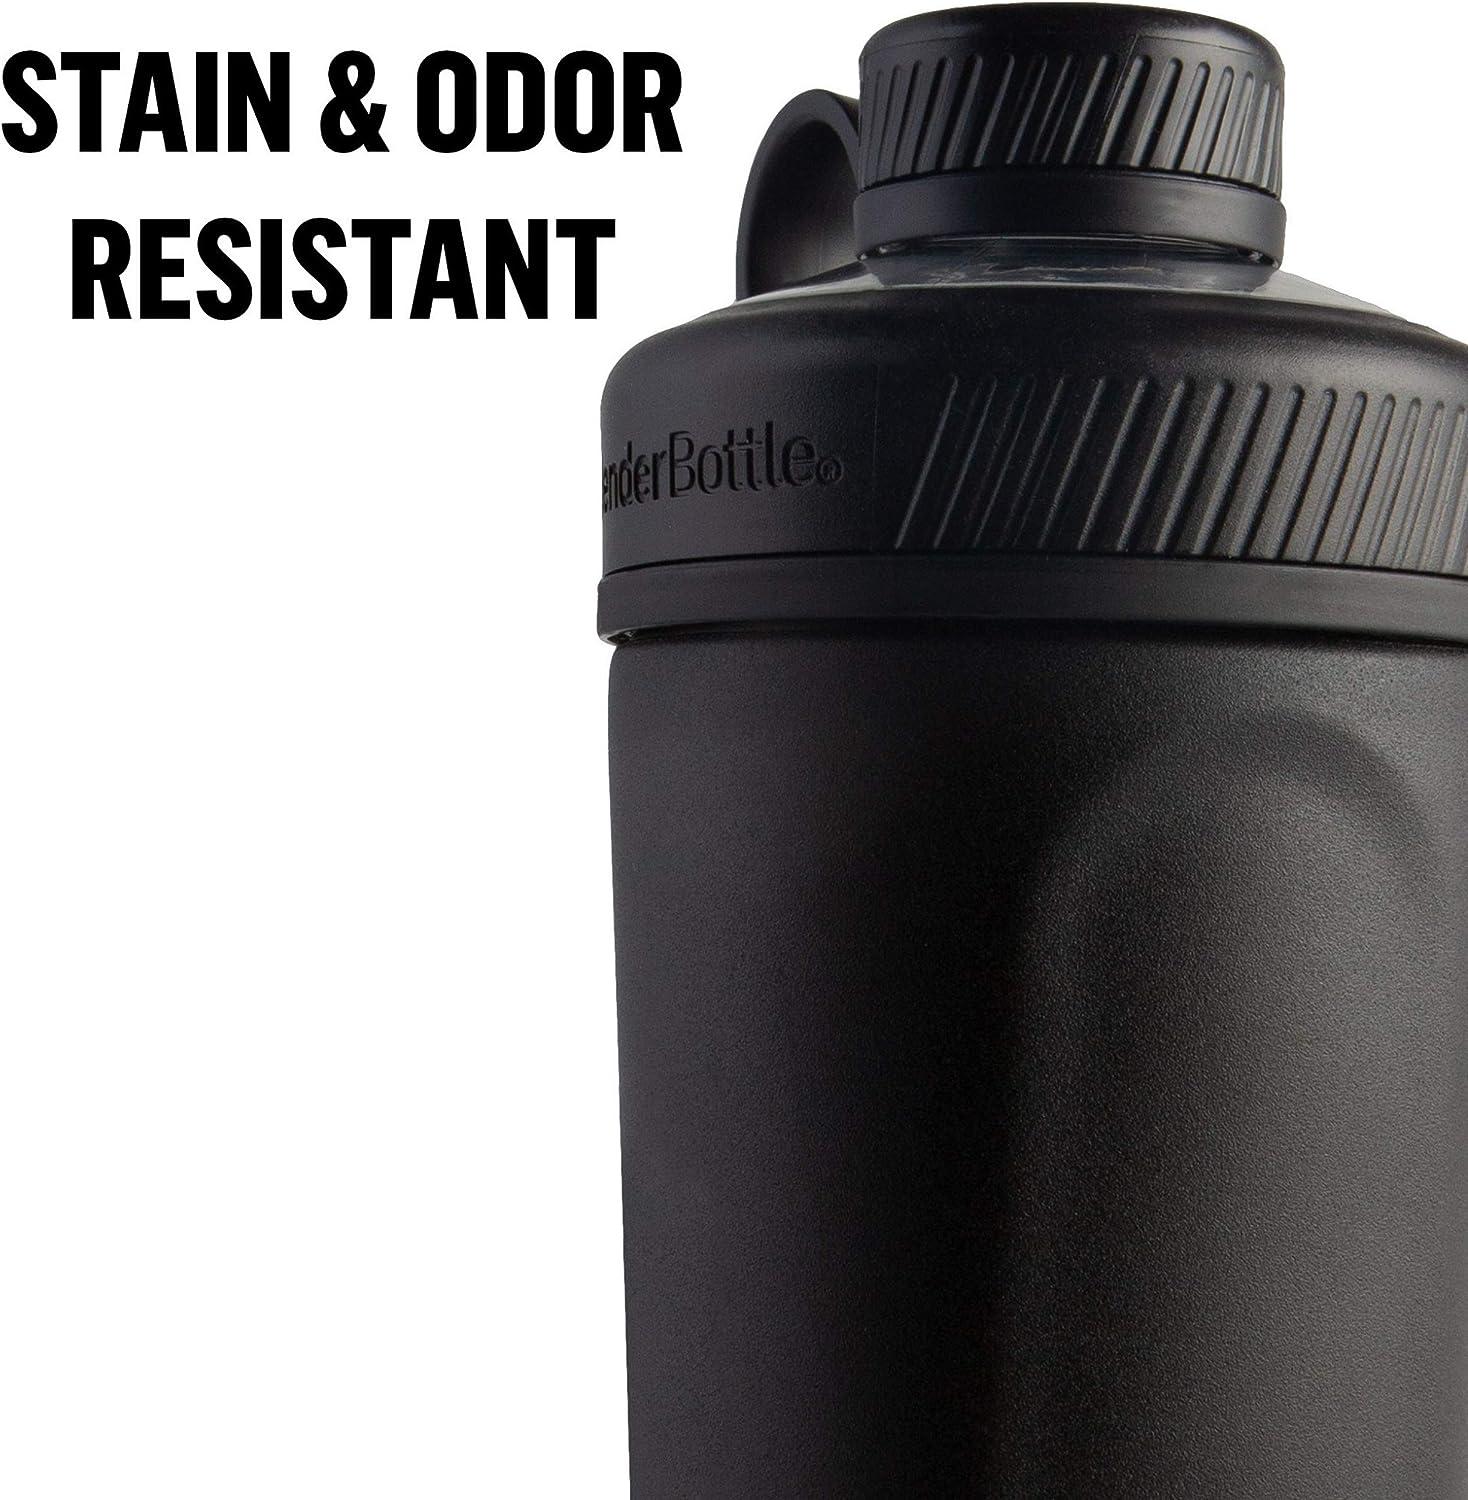 Blender Bottle Marvel Radian 26 oz. Insulated Stainless Steel Shaker Cup